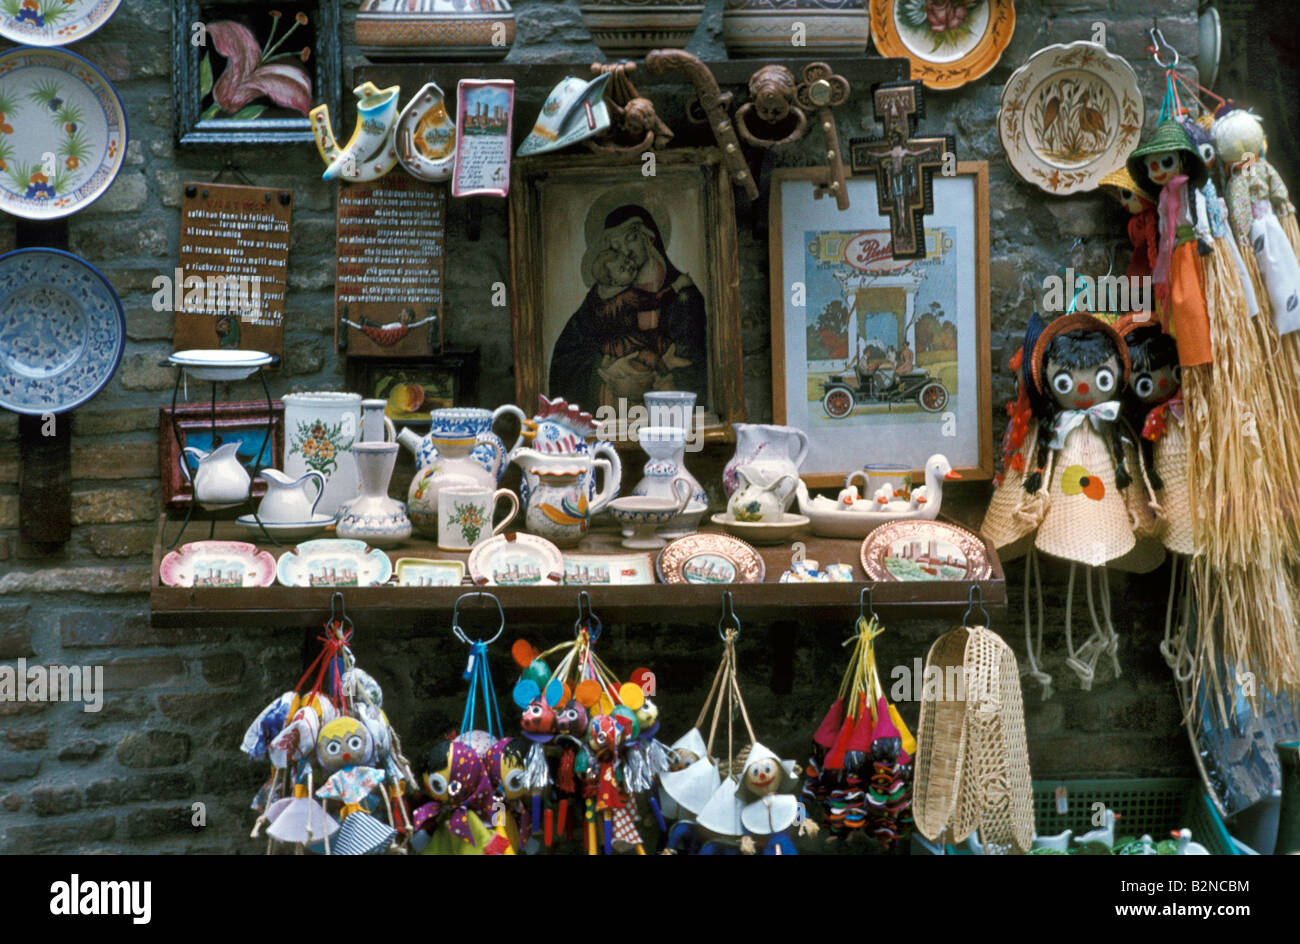 ceramics and souvenirs, san gimignano, italy Stock Photo